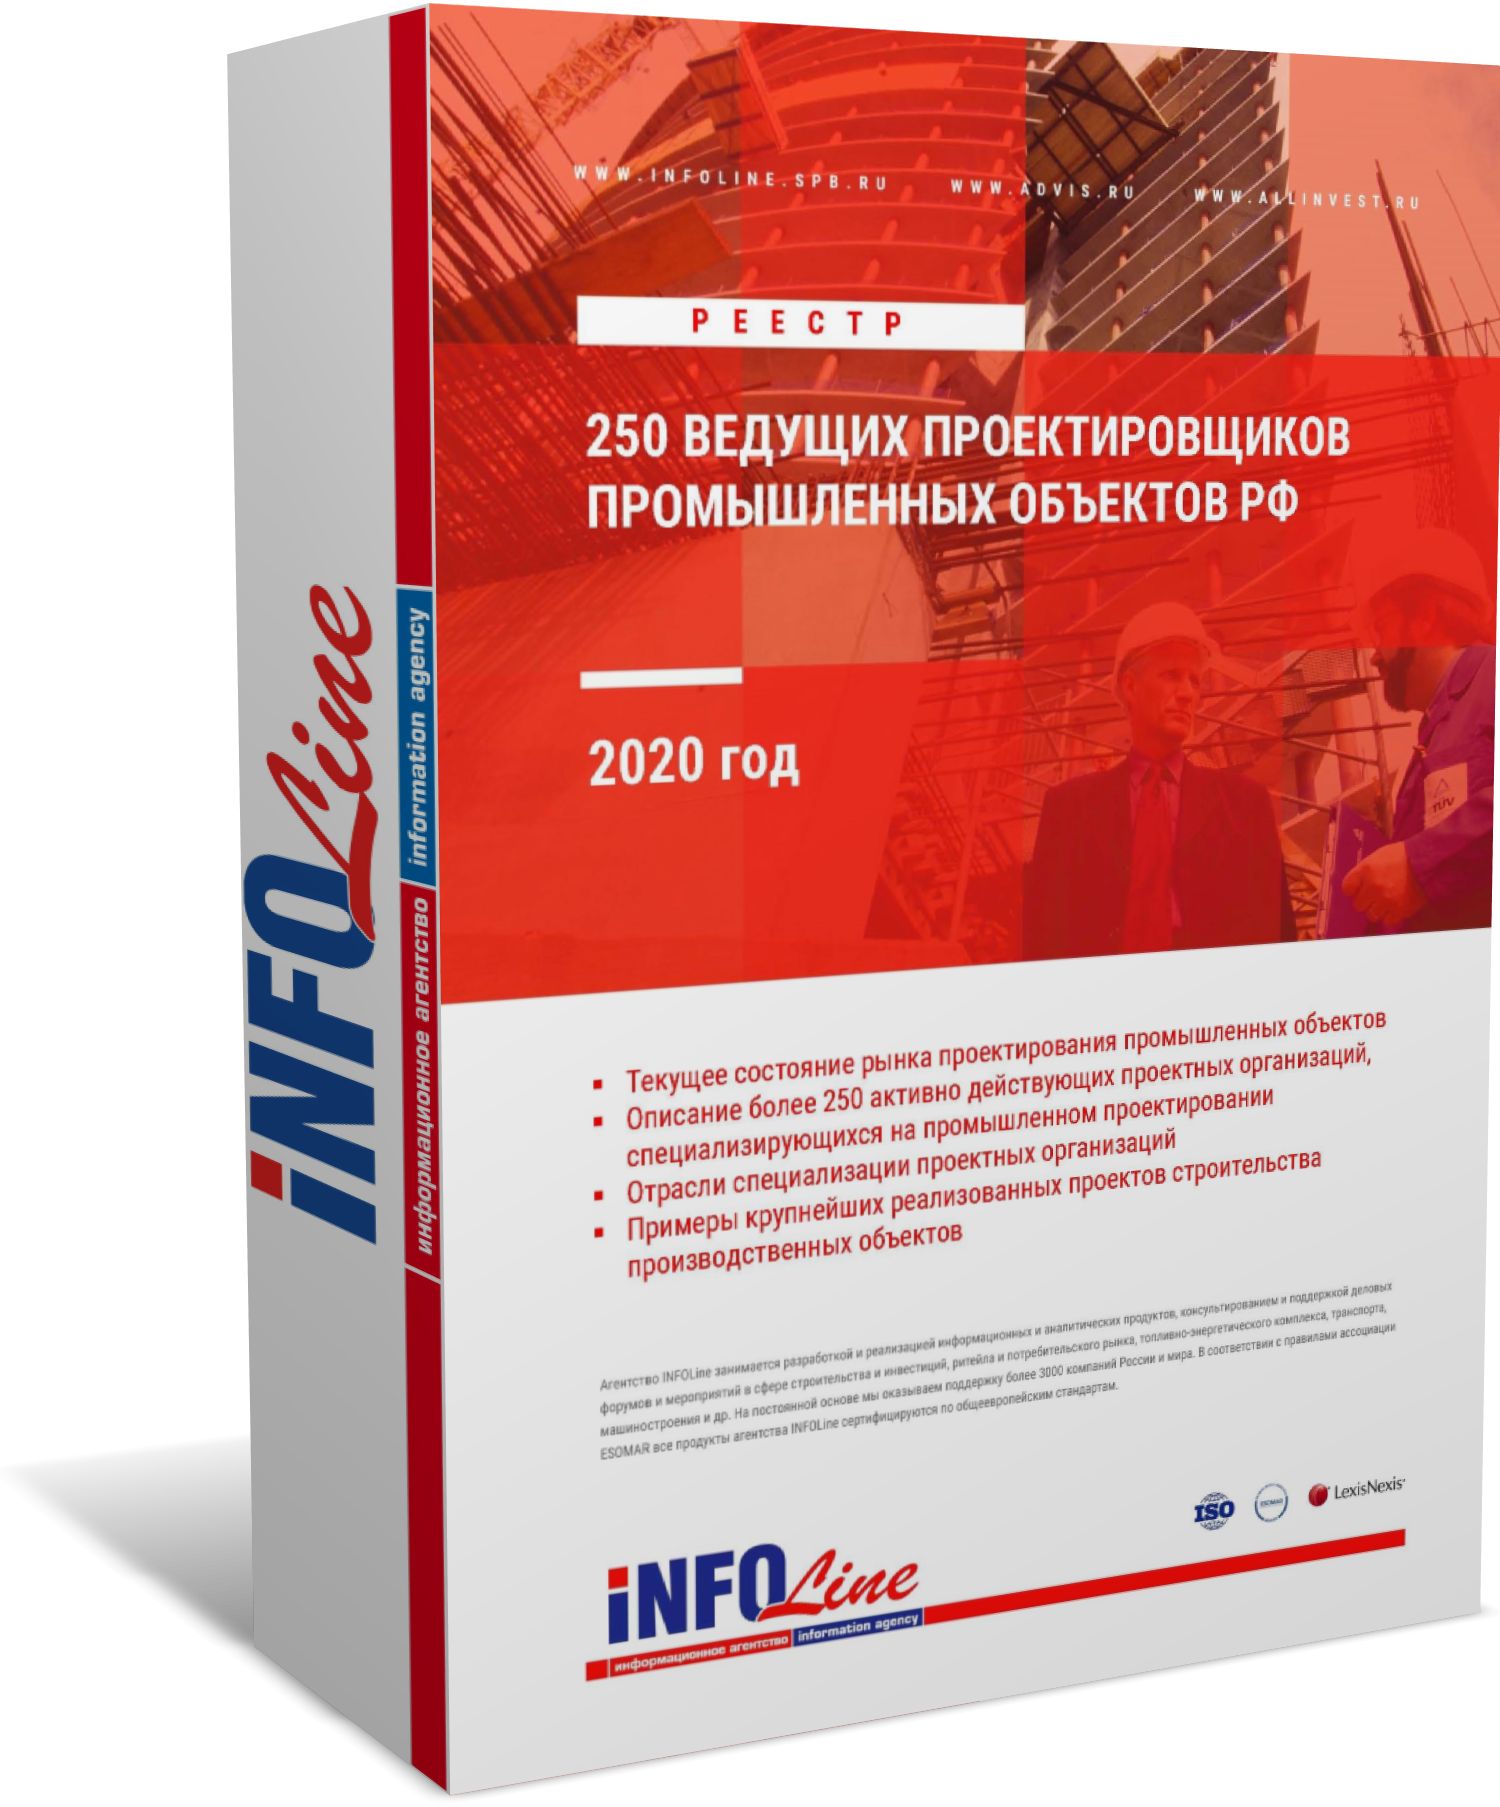 Реестр "250 ведущих проектировщиков промышленных объектов РФ 2020 года" (доступна обновленная версия)